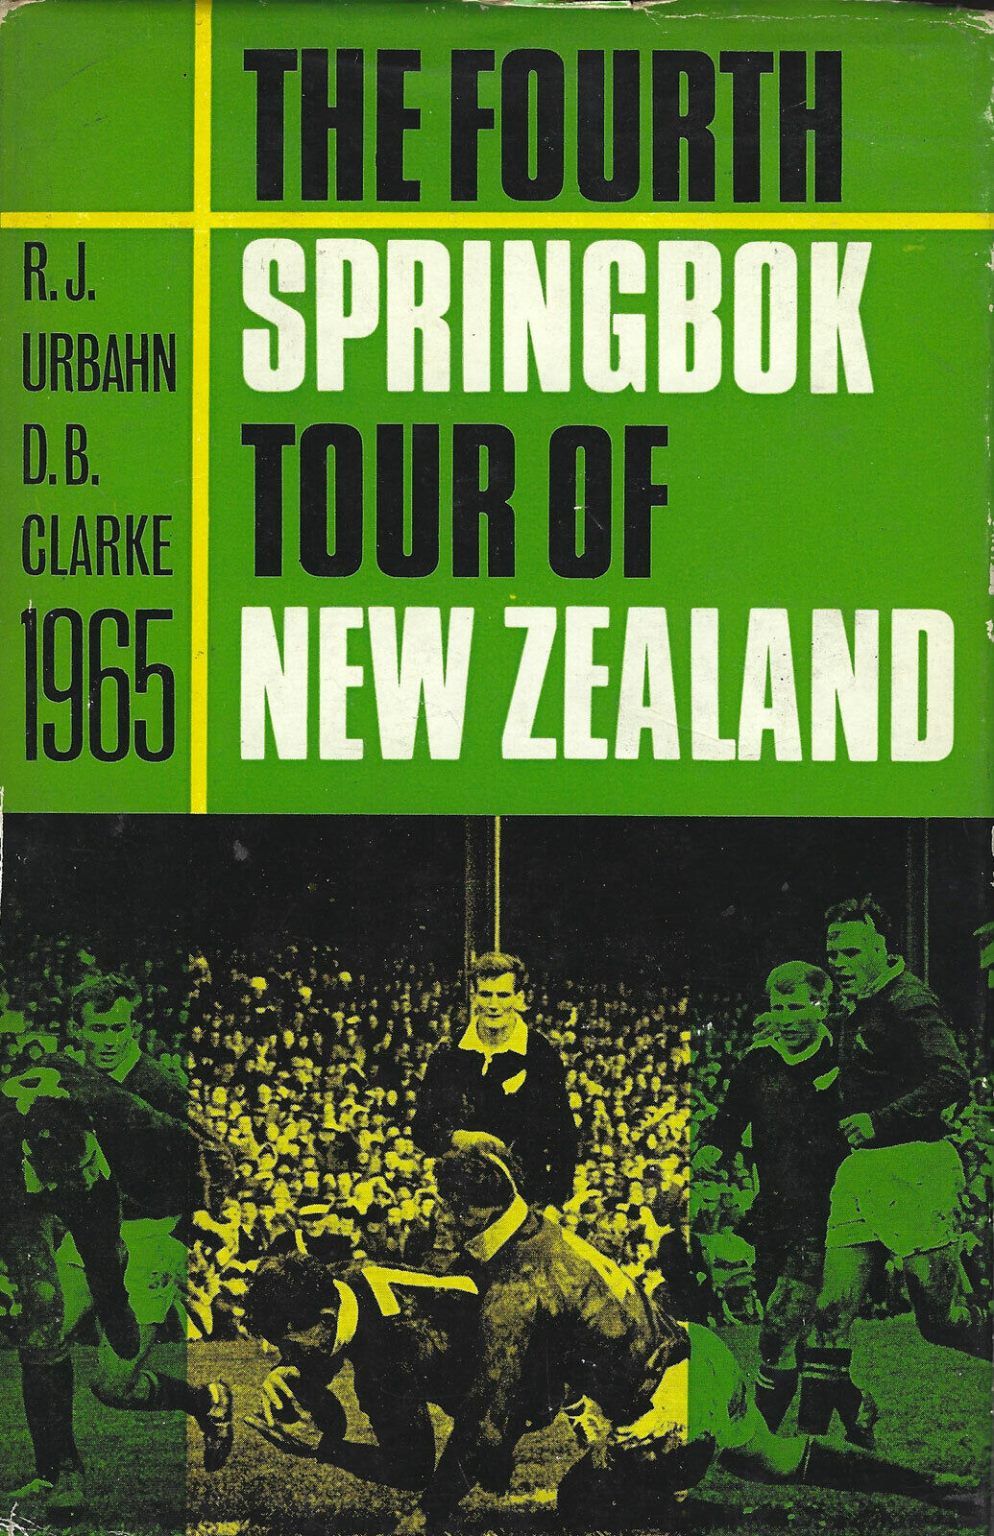 THE FOURTH SPRINGBOK TOUR OF NEW ZEALAND